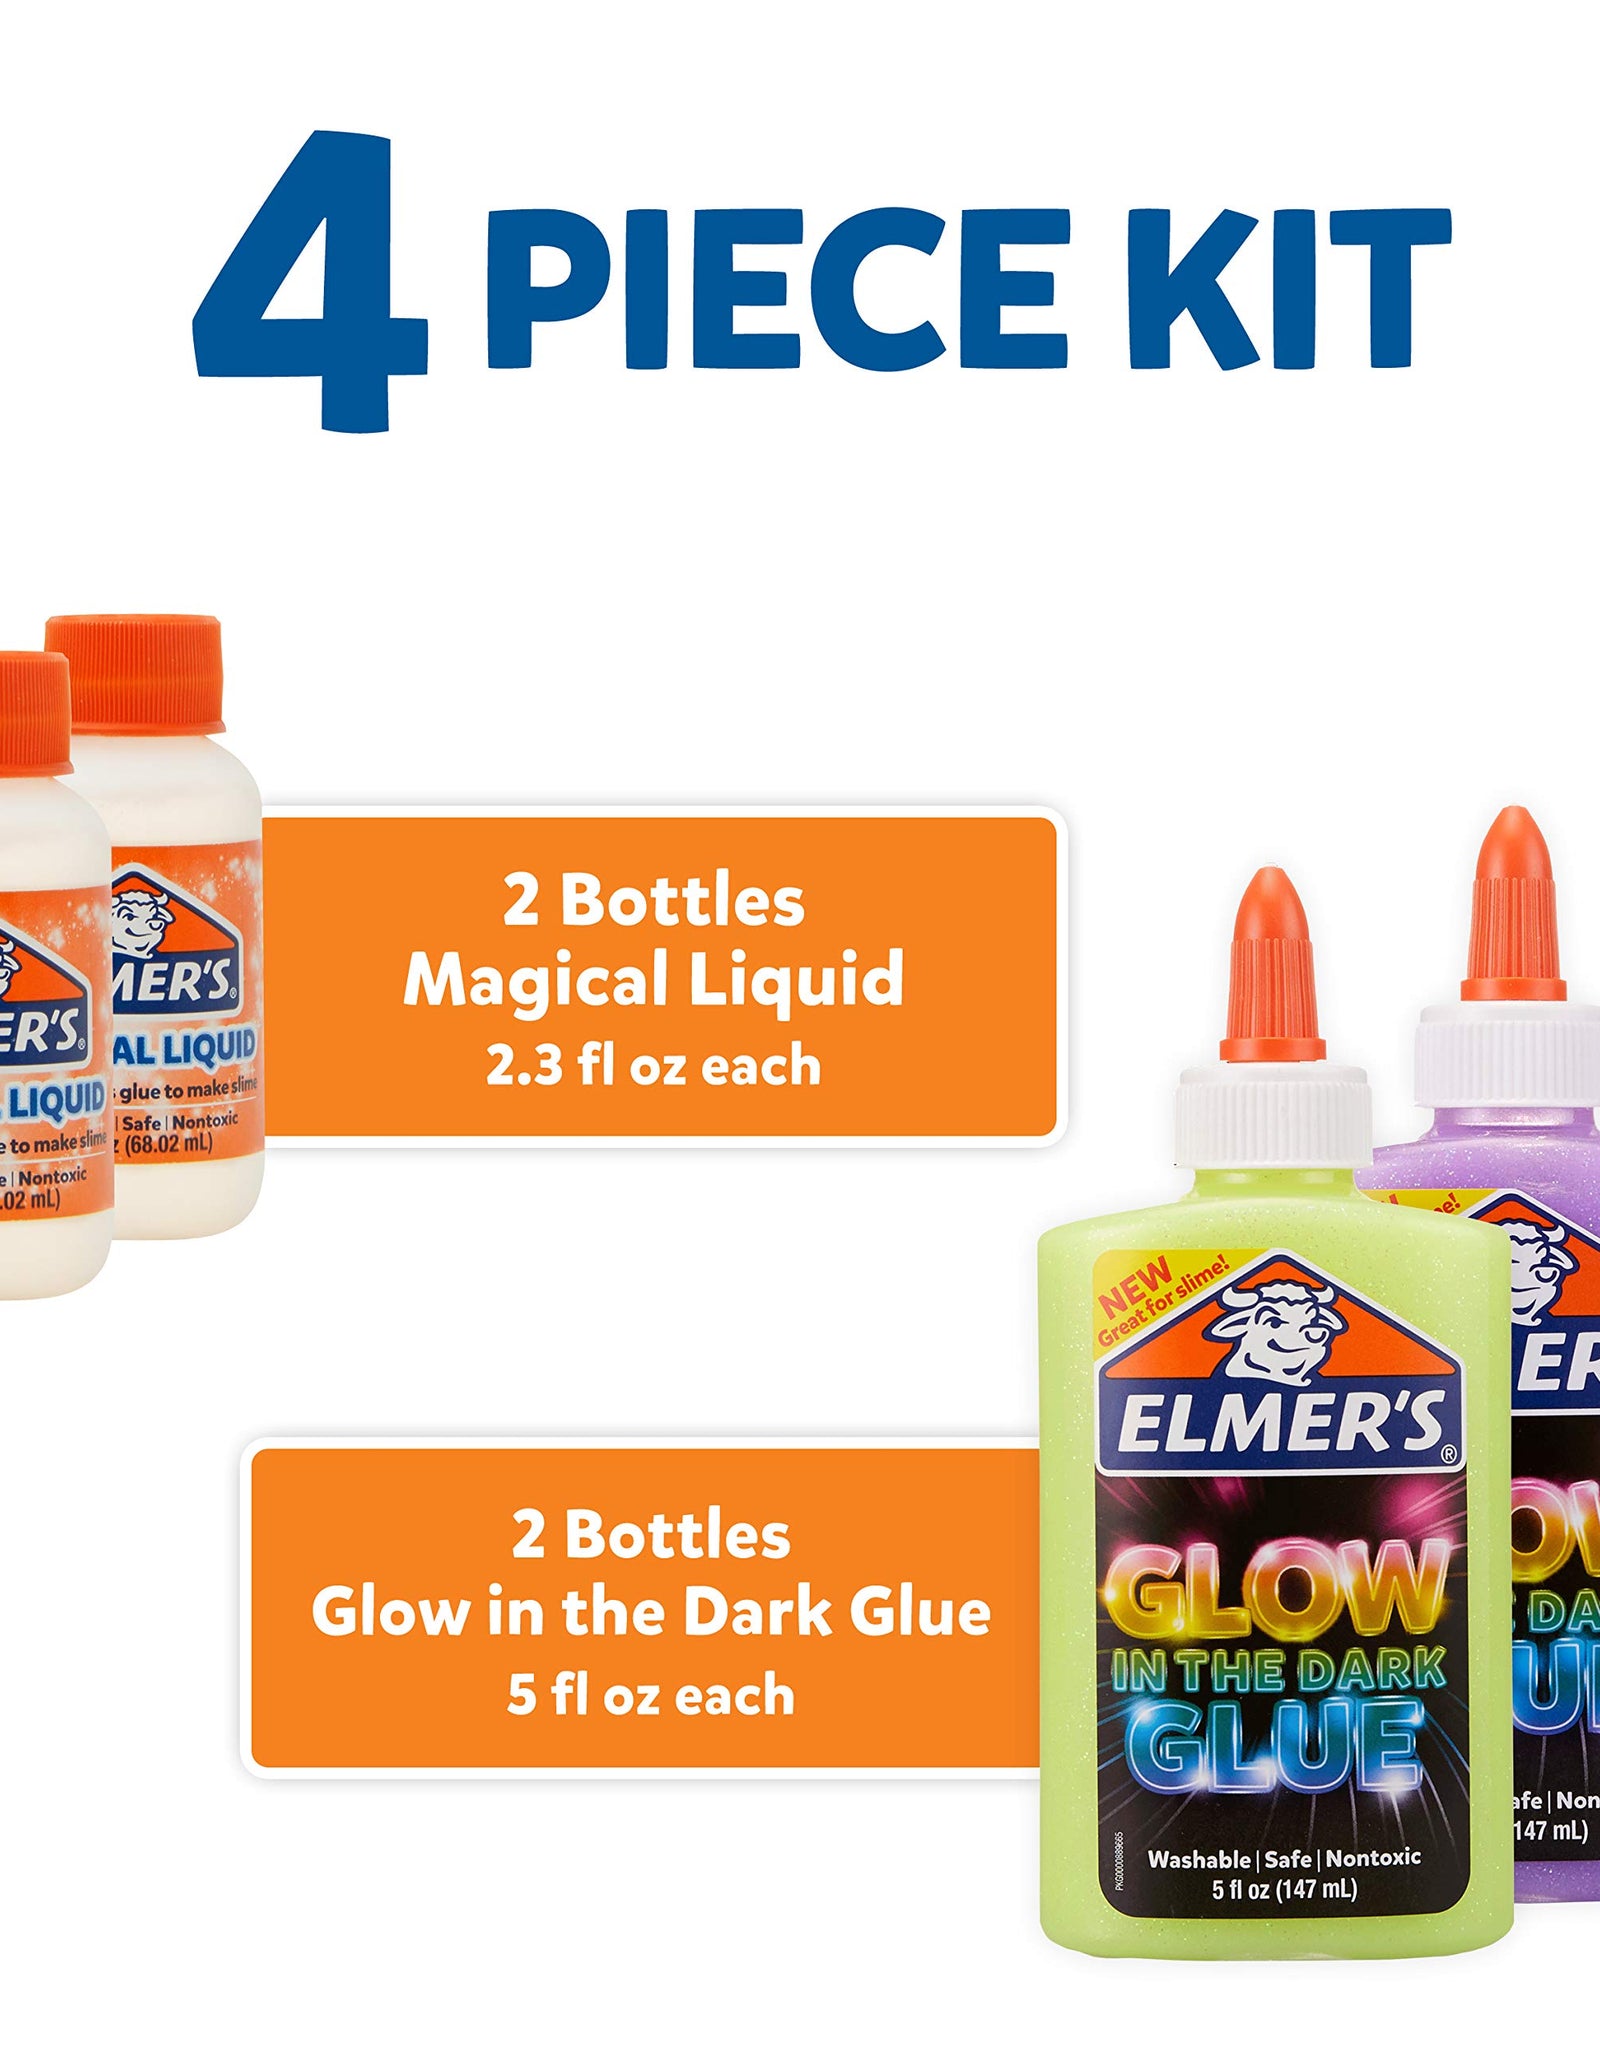 Elmer's Glow-in-the-Dark Slime Kit (2062242)